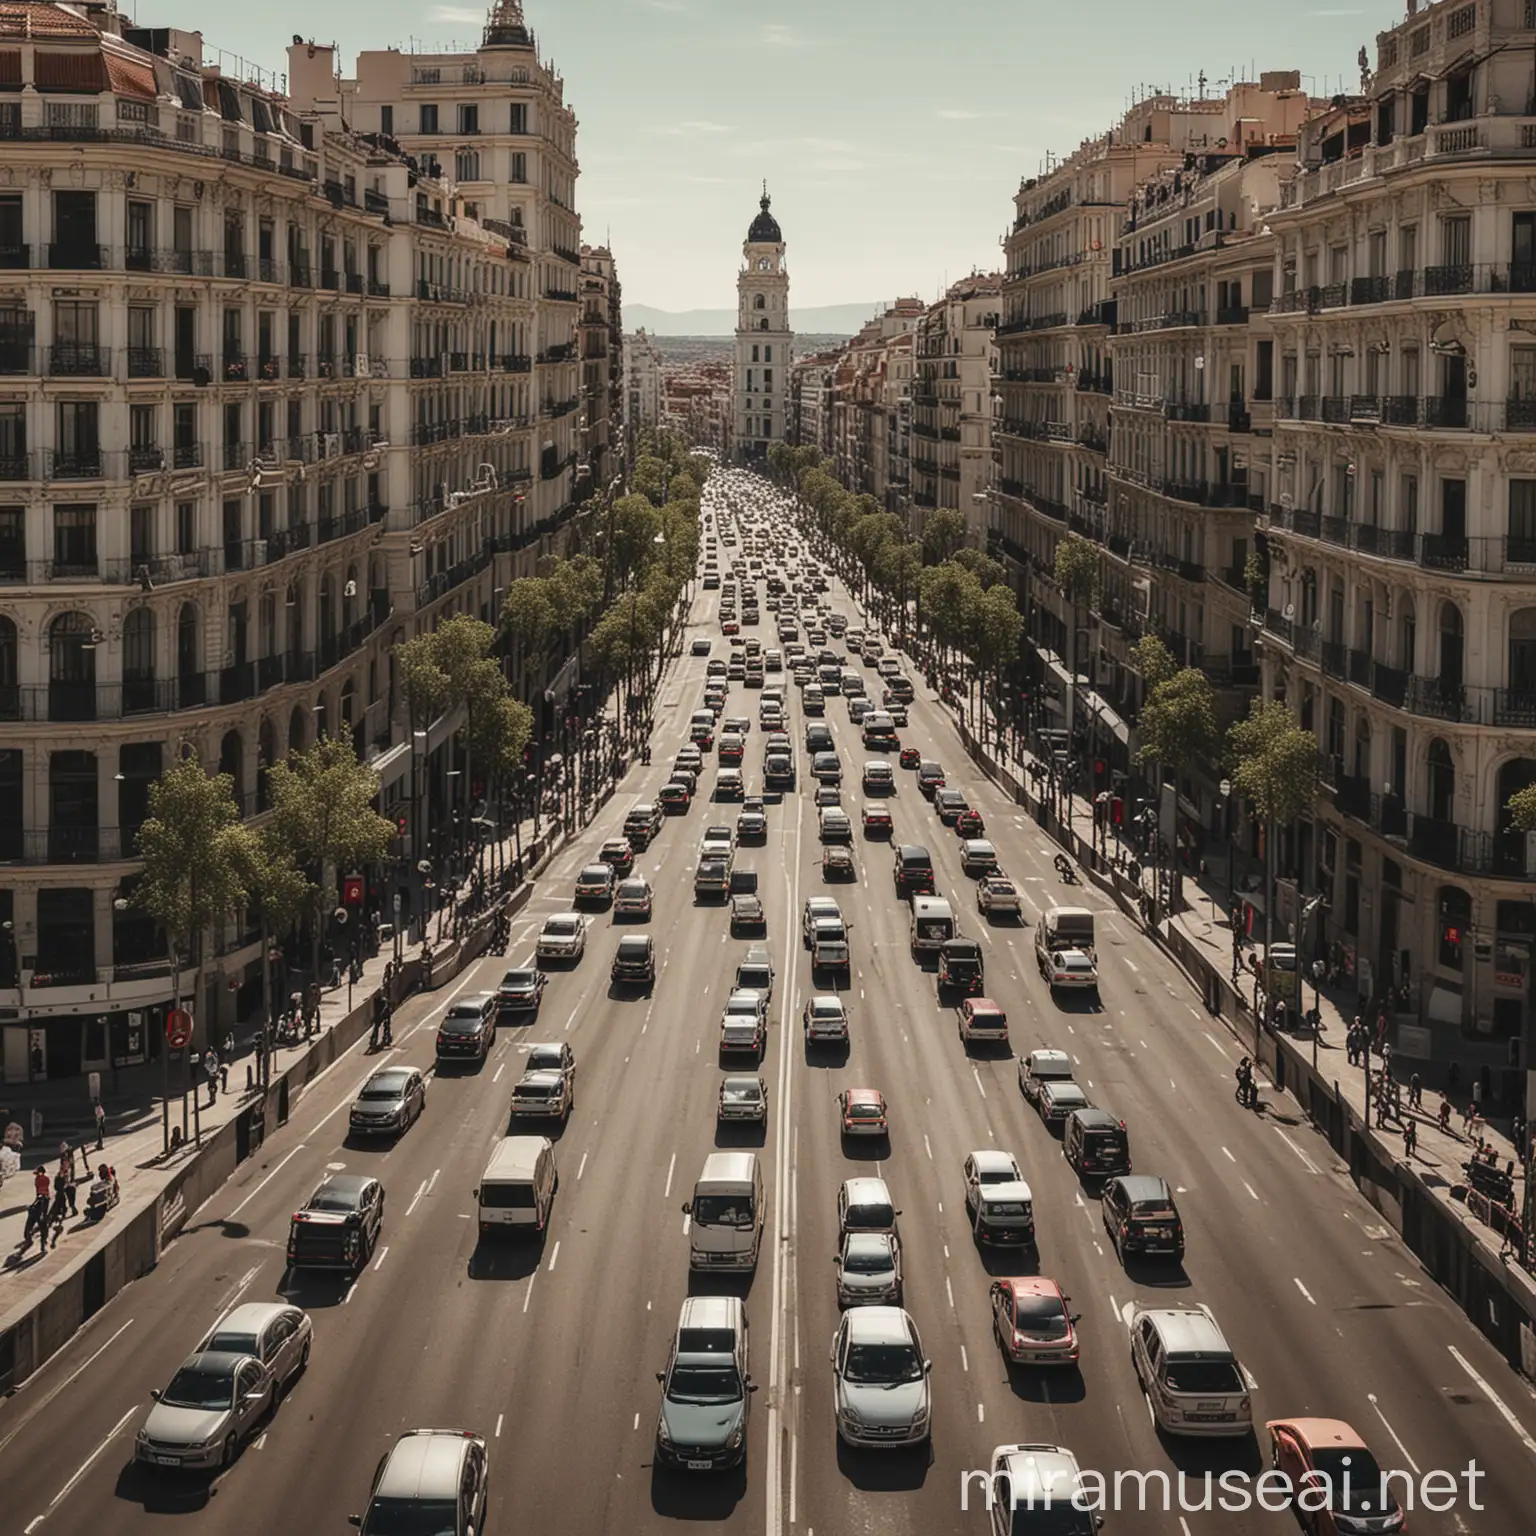 carretera en ciudad como Madrid con mucho tráfico